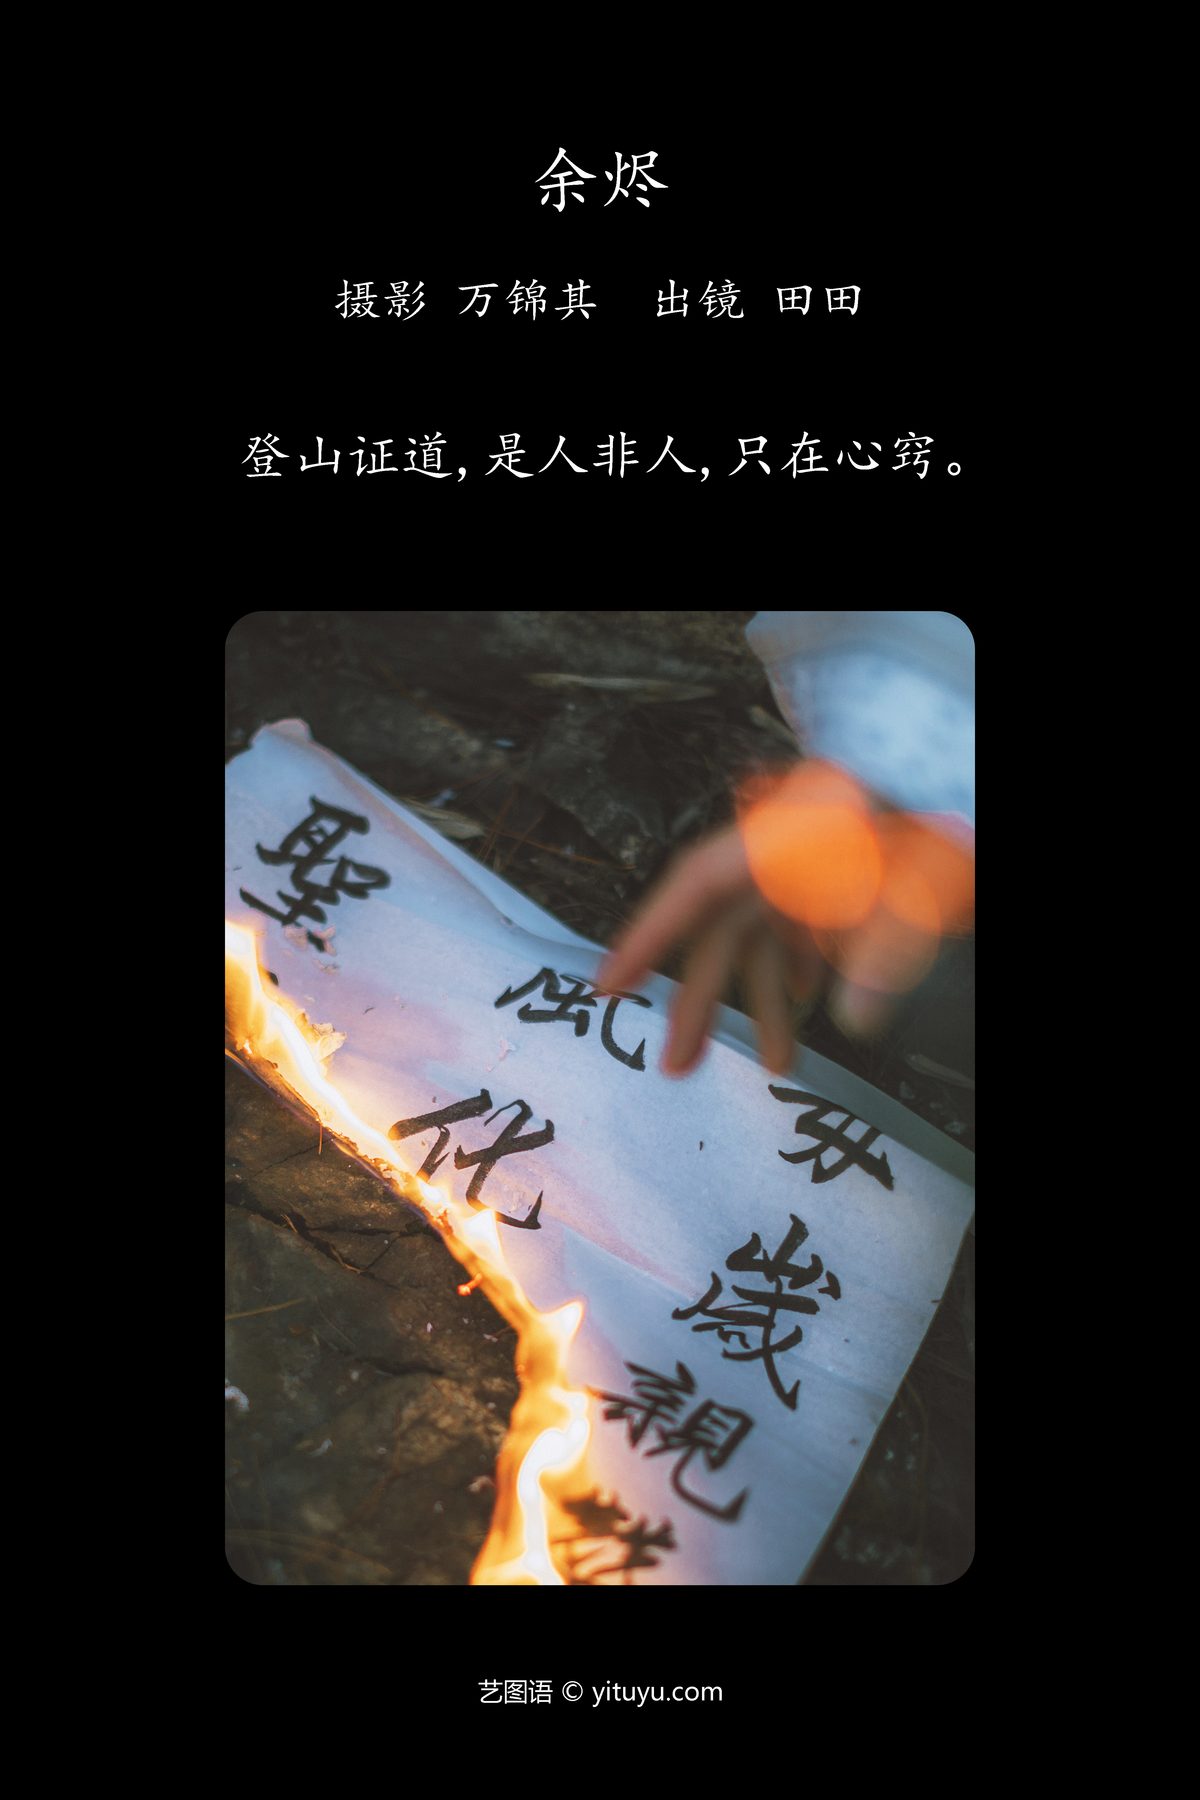 YiTuYu艺图语 Vol 4948 Dang Chu Jiao Ren Jia Xiao Tian Tian 0001 6835456543.jpg